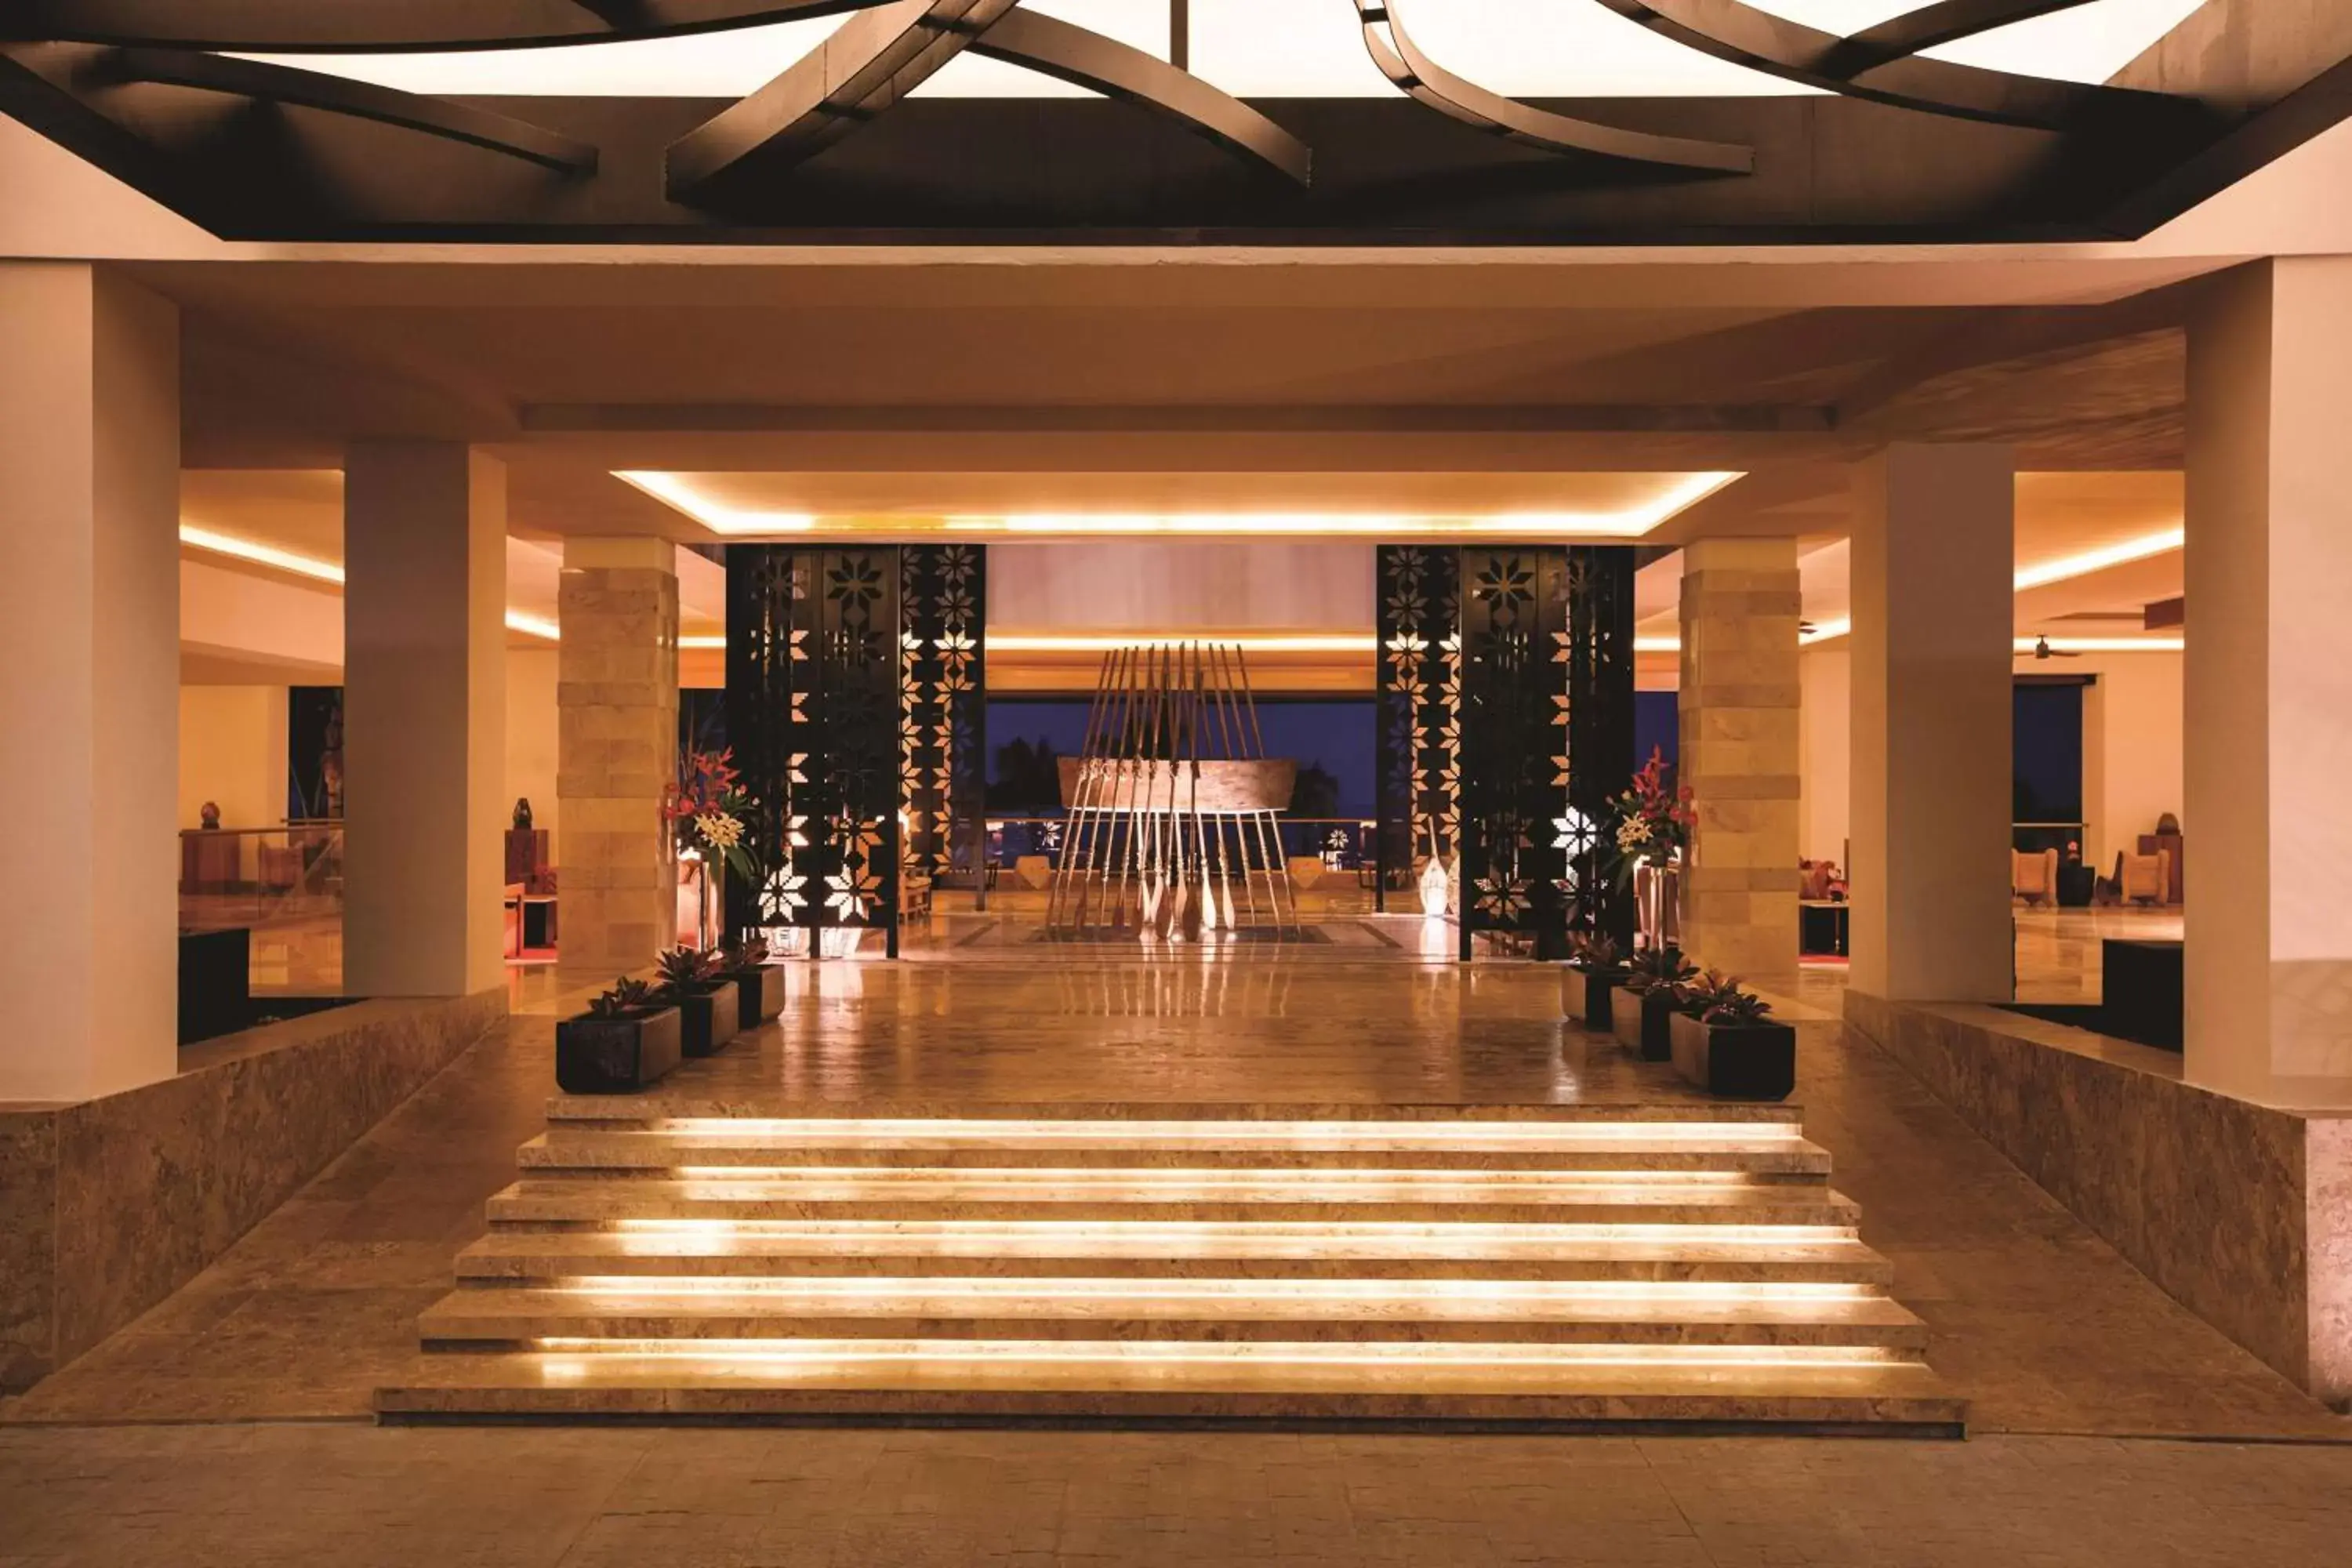 Lobby or reception in Hyatt Ziva Puerto Vallarta